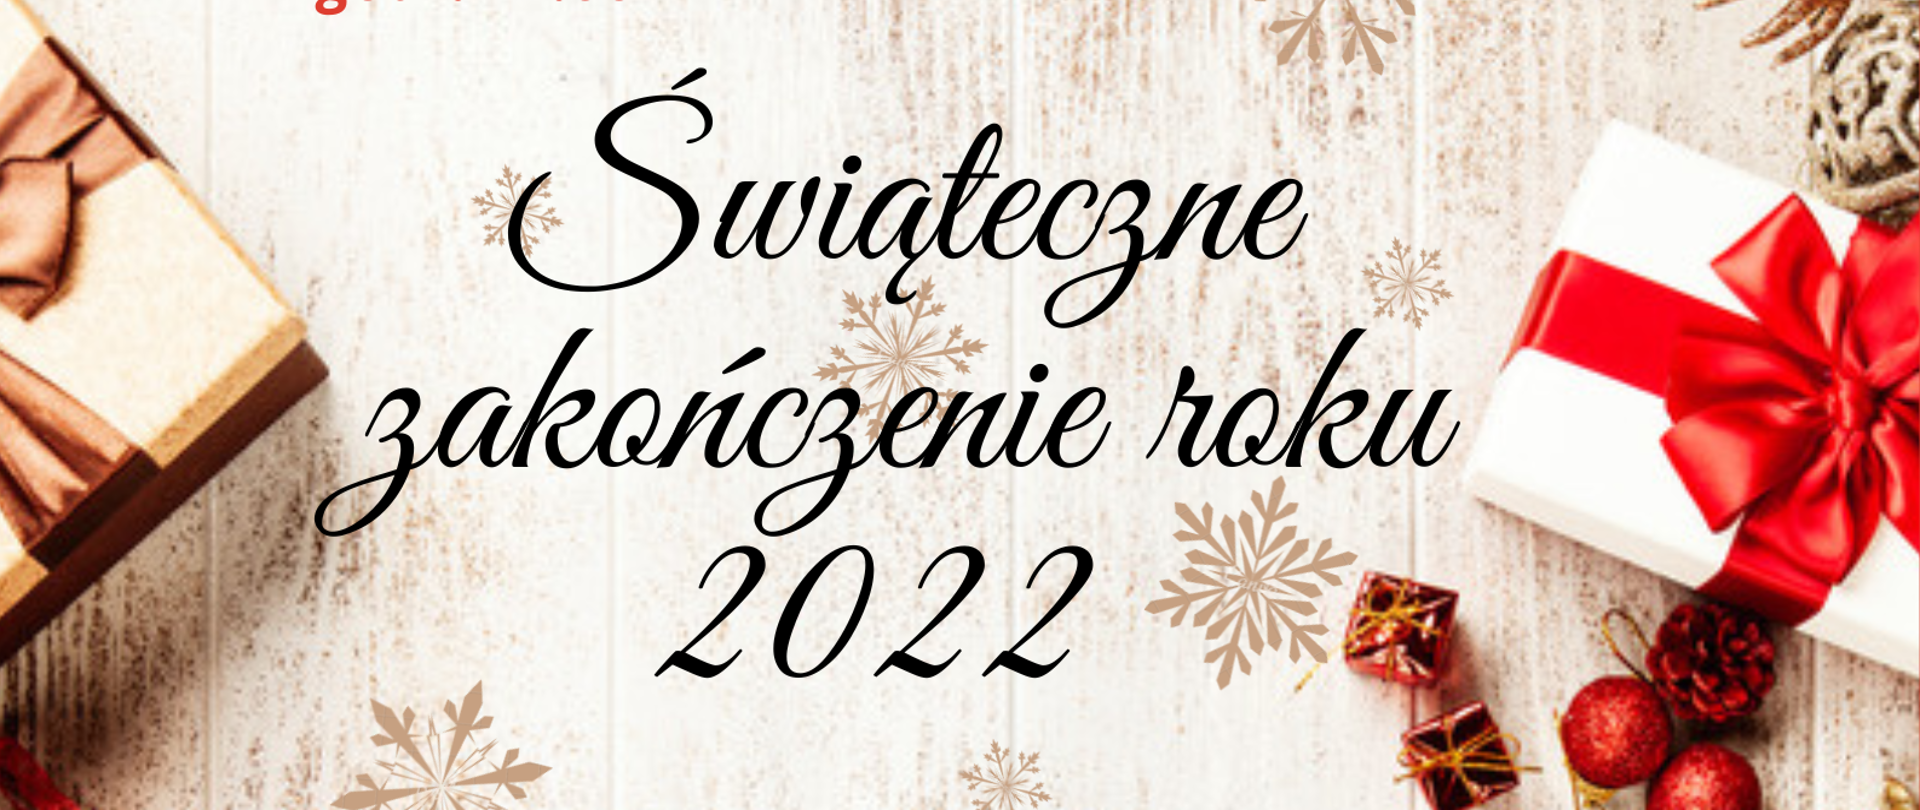 Plakat reklamujący popis klasy fortepianu p. Pauliny Kukuczki w dniu 20.12.2022 r. o godz.: 17:00. W tle zdjęcie ze świątecznymi elementami. 